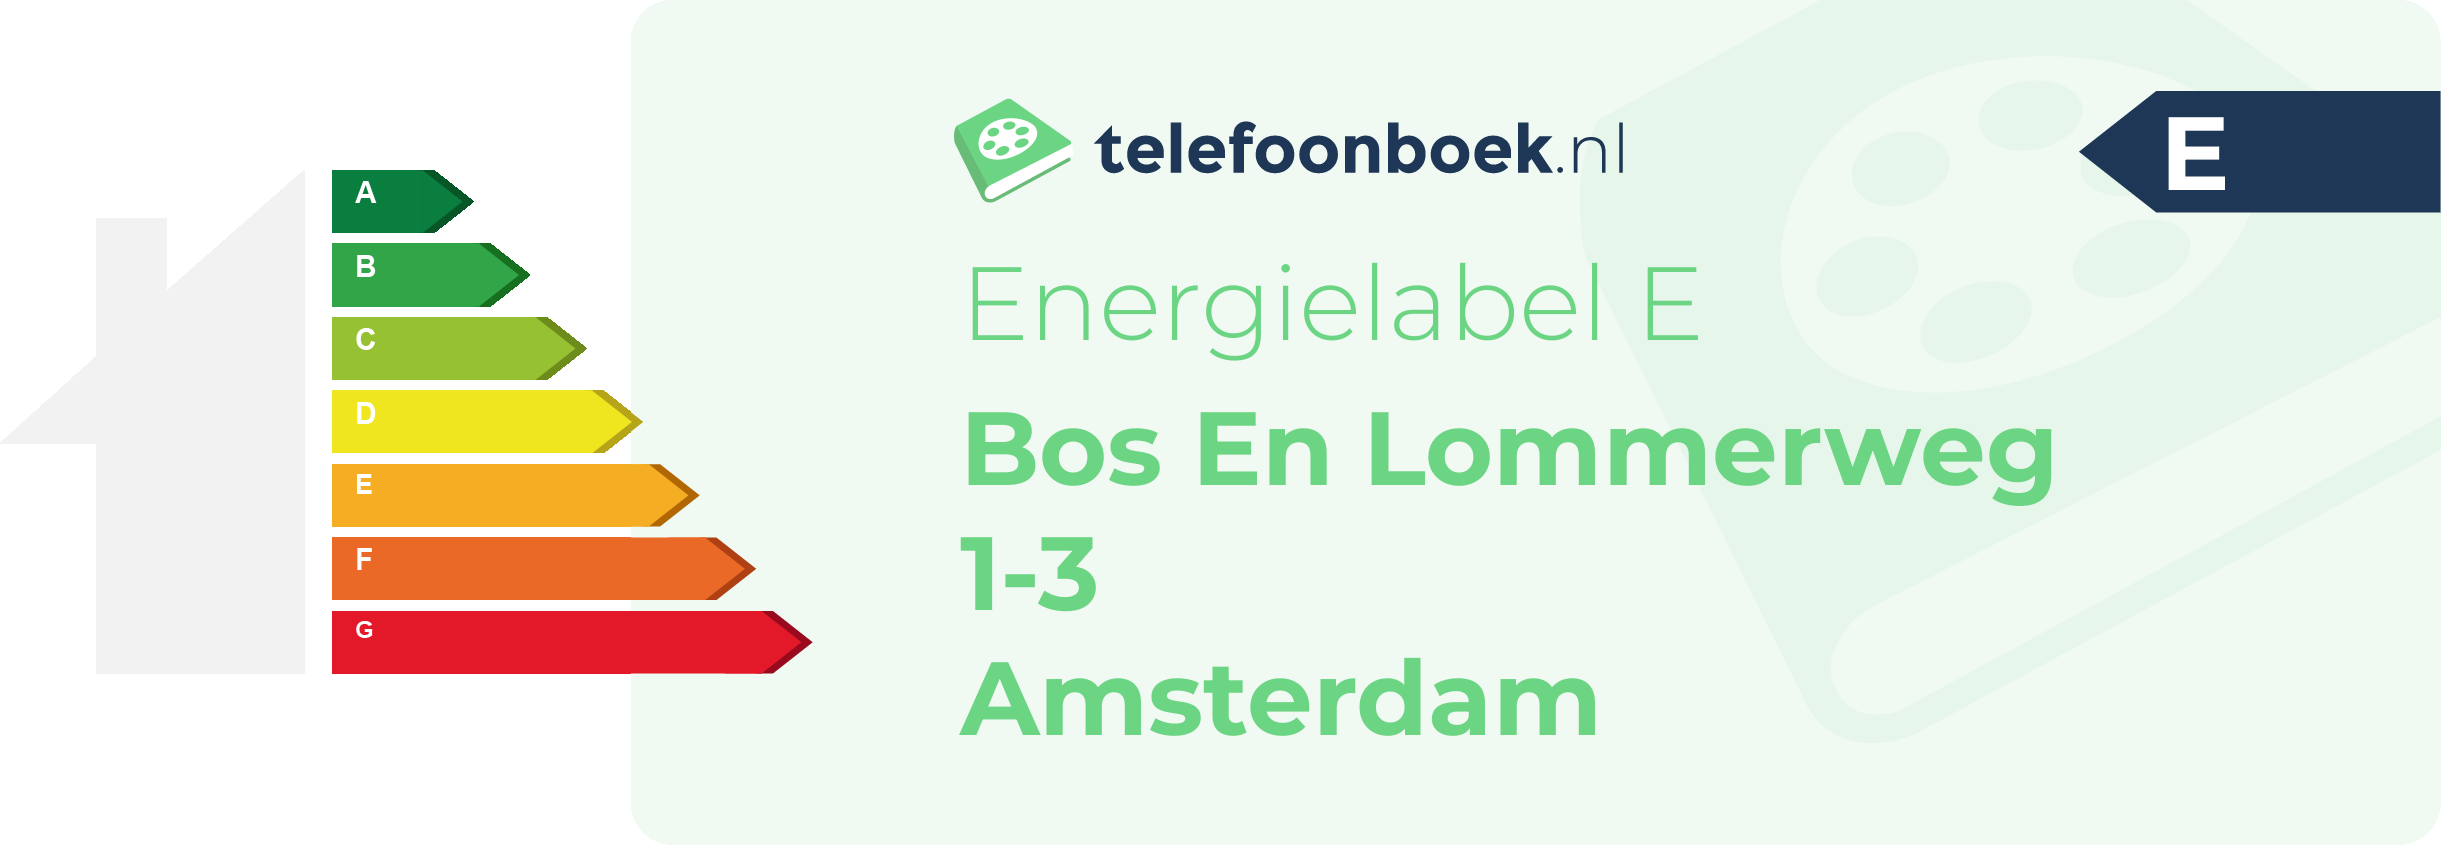 Energielabel Bos En Lommerweg 1-3 Amsterdam